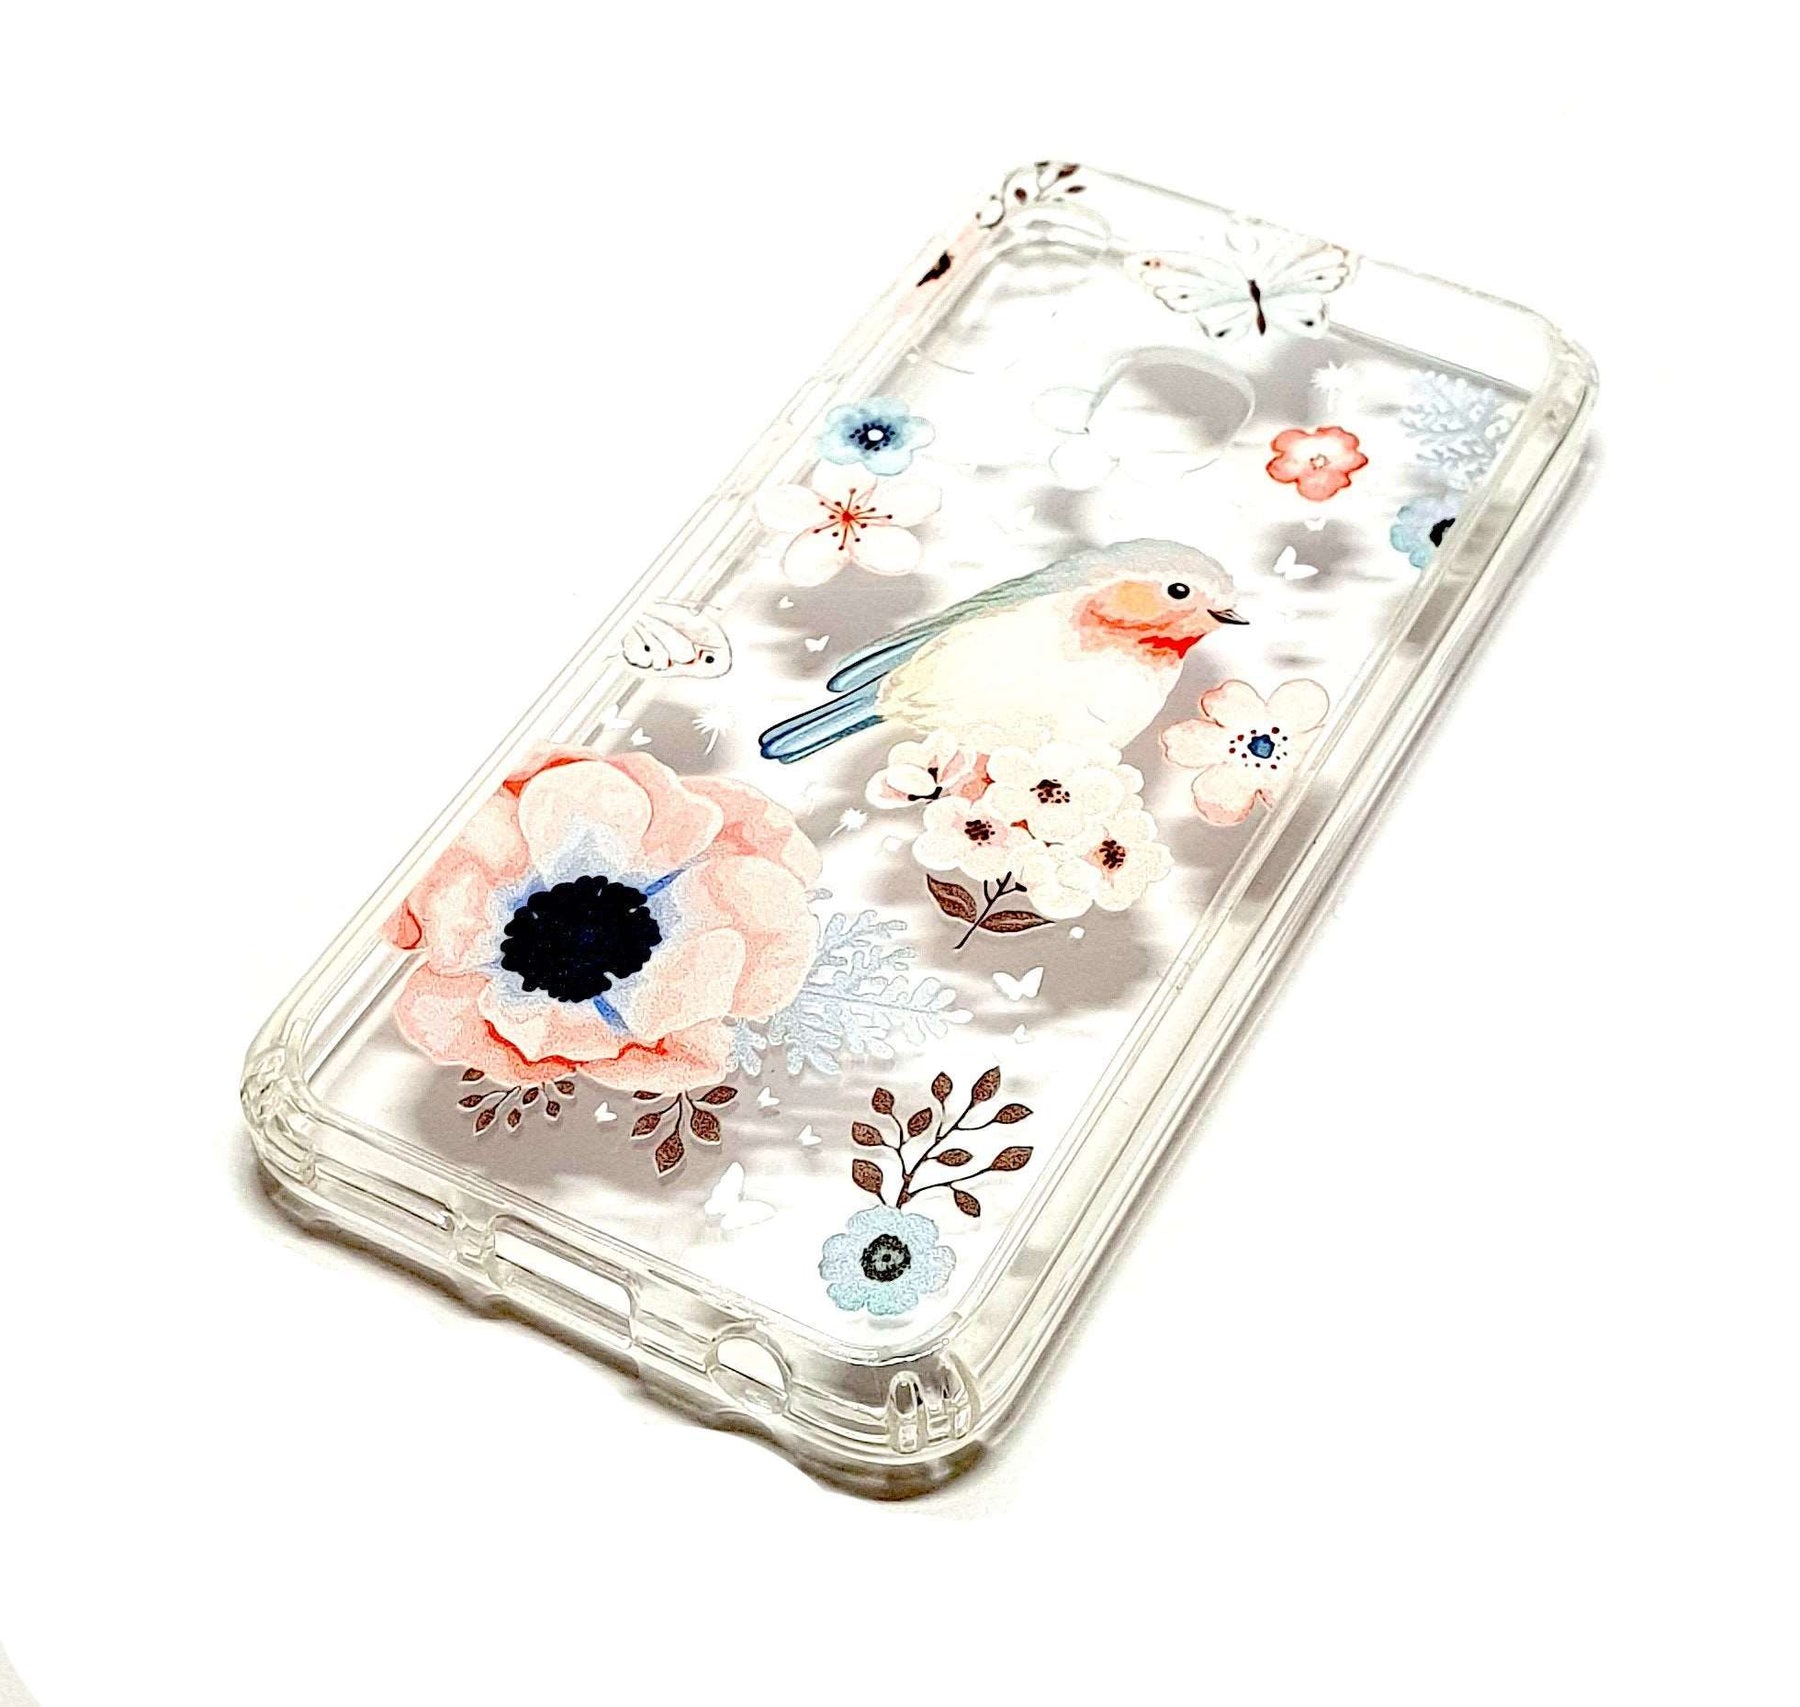 Samsung A20e decorative clear transparent phone case robin